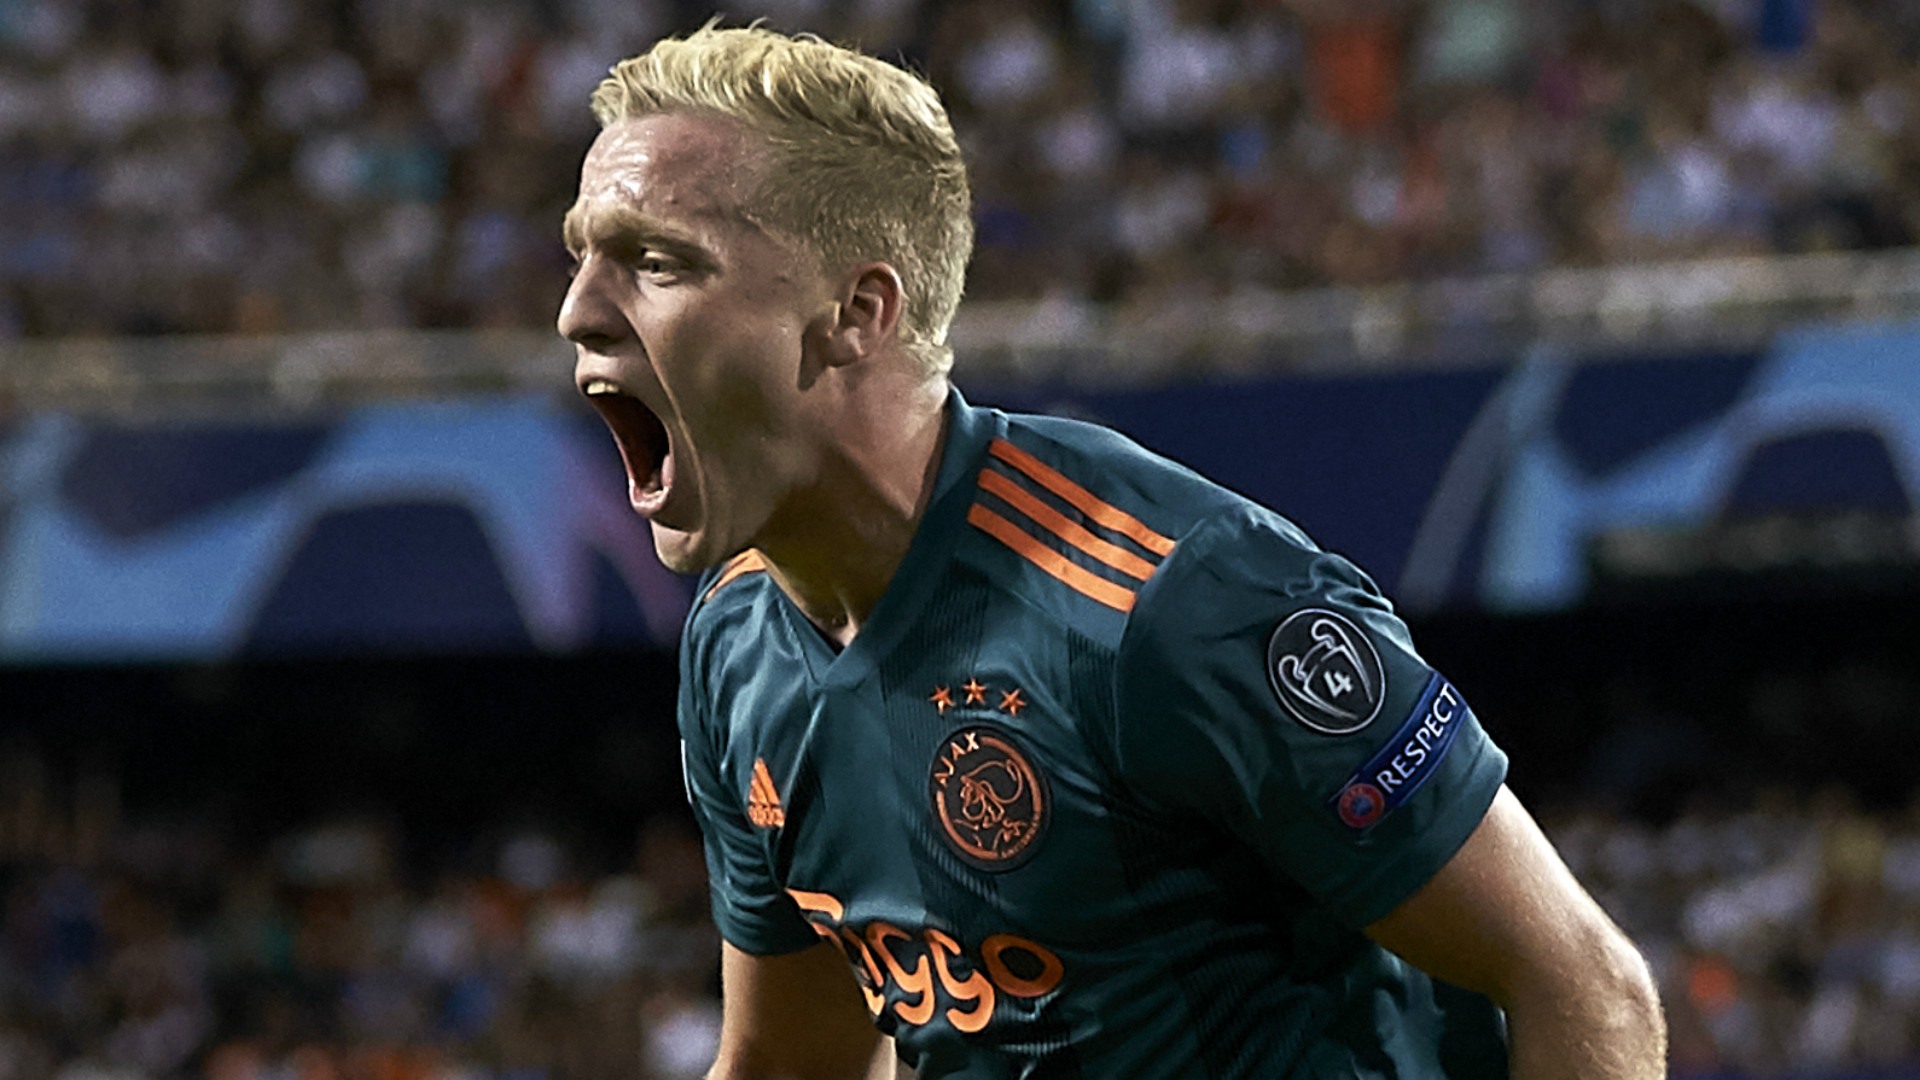 Man Utd sign Ajax star Van de Beek in £35m deal